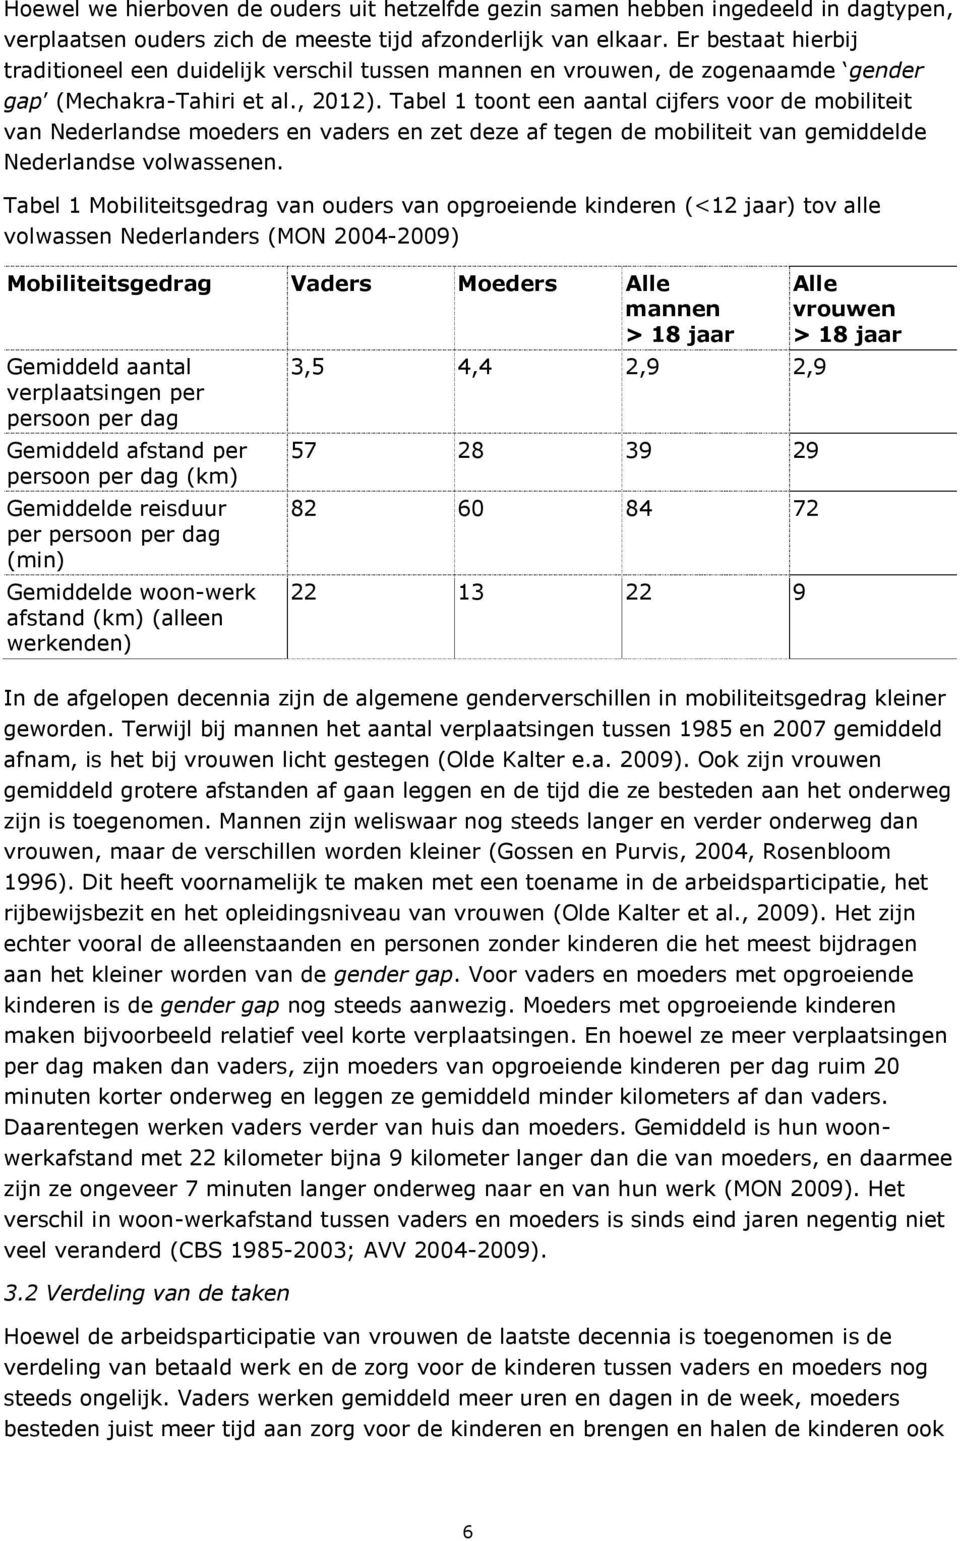 Tabel 1 toont een aantal cijfers voor de mobiliteit van Nederlandse moeders en vaders en zet deze af tegen de mobiliteit van gemiddelde Nederlandse volwassenen.